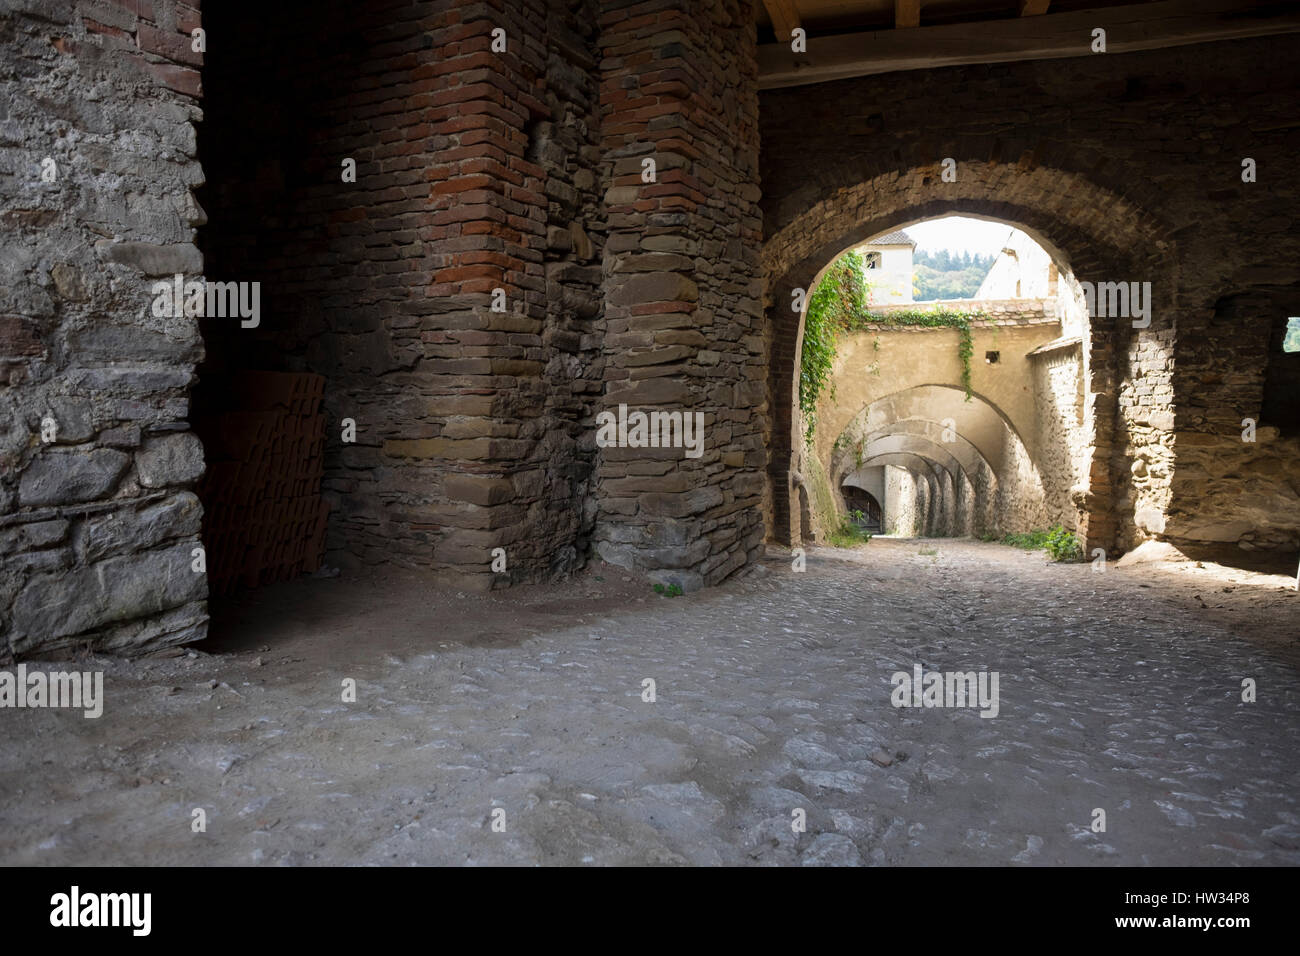 Passage couvert à l'intérieur de l'église fortifiée Saxons historiques à BIERTAN, Roumanie. C'est un monde de l'UNESCO Heratige Site. Banque D'Images